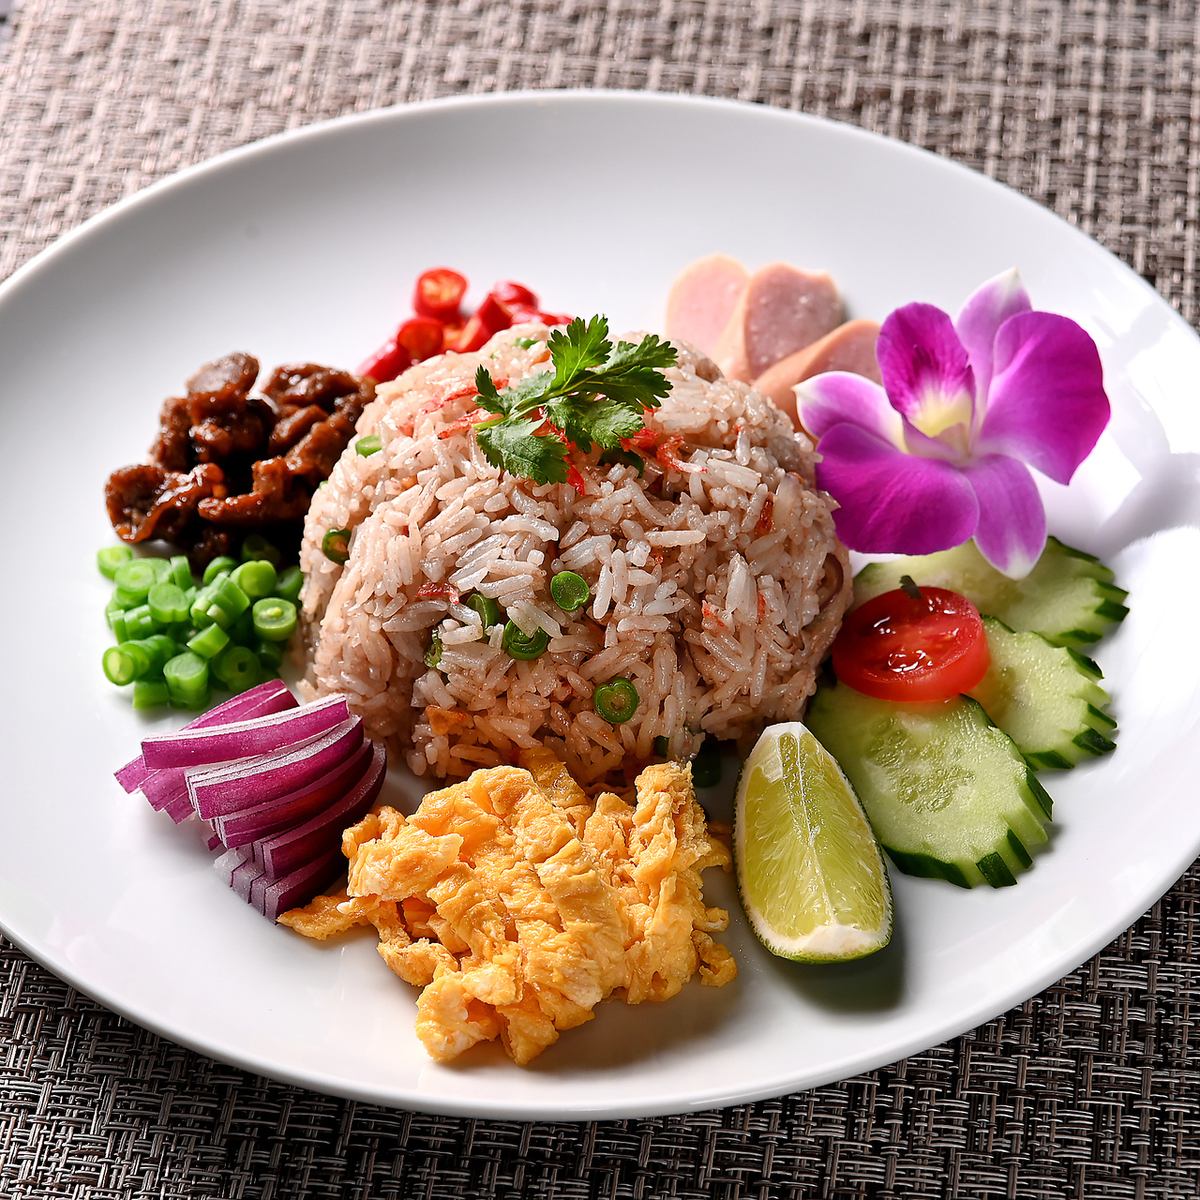 您可以在午餐時間享用正宗的泰國美食。